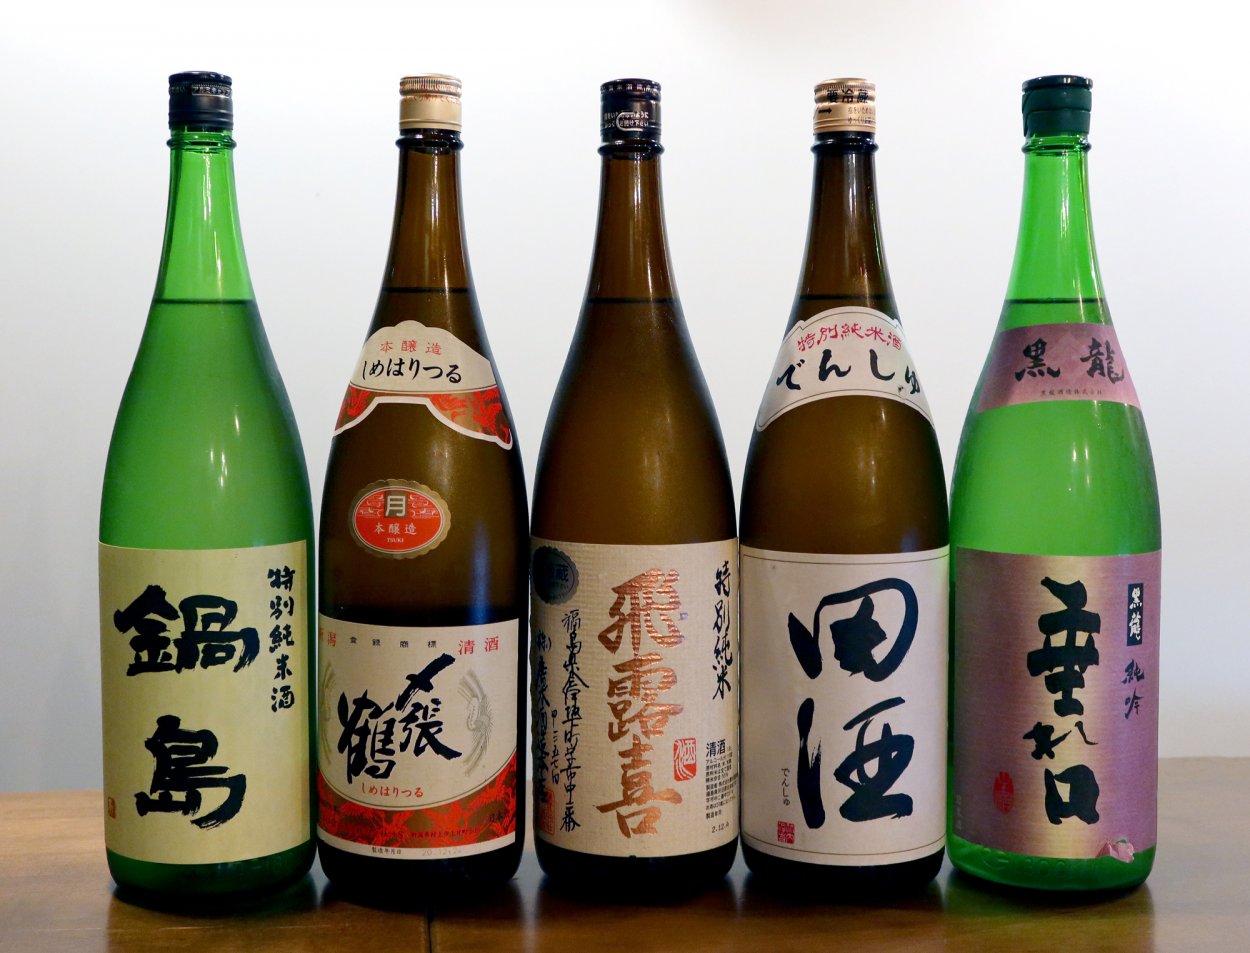 『青天上』で定番の日本酒たち